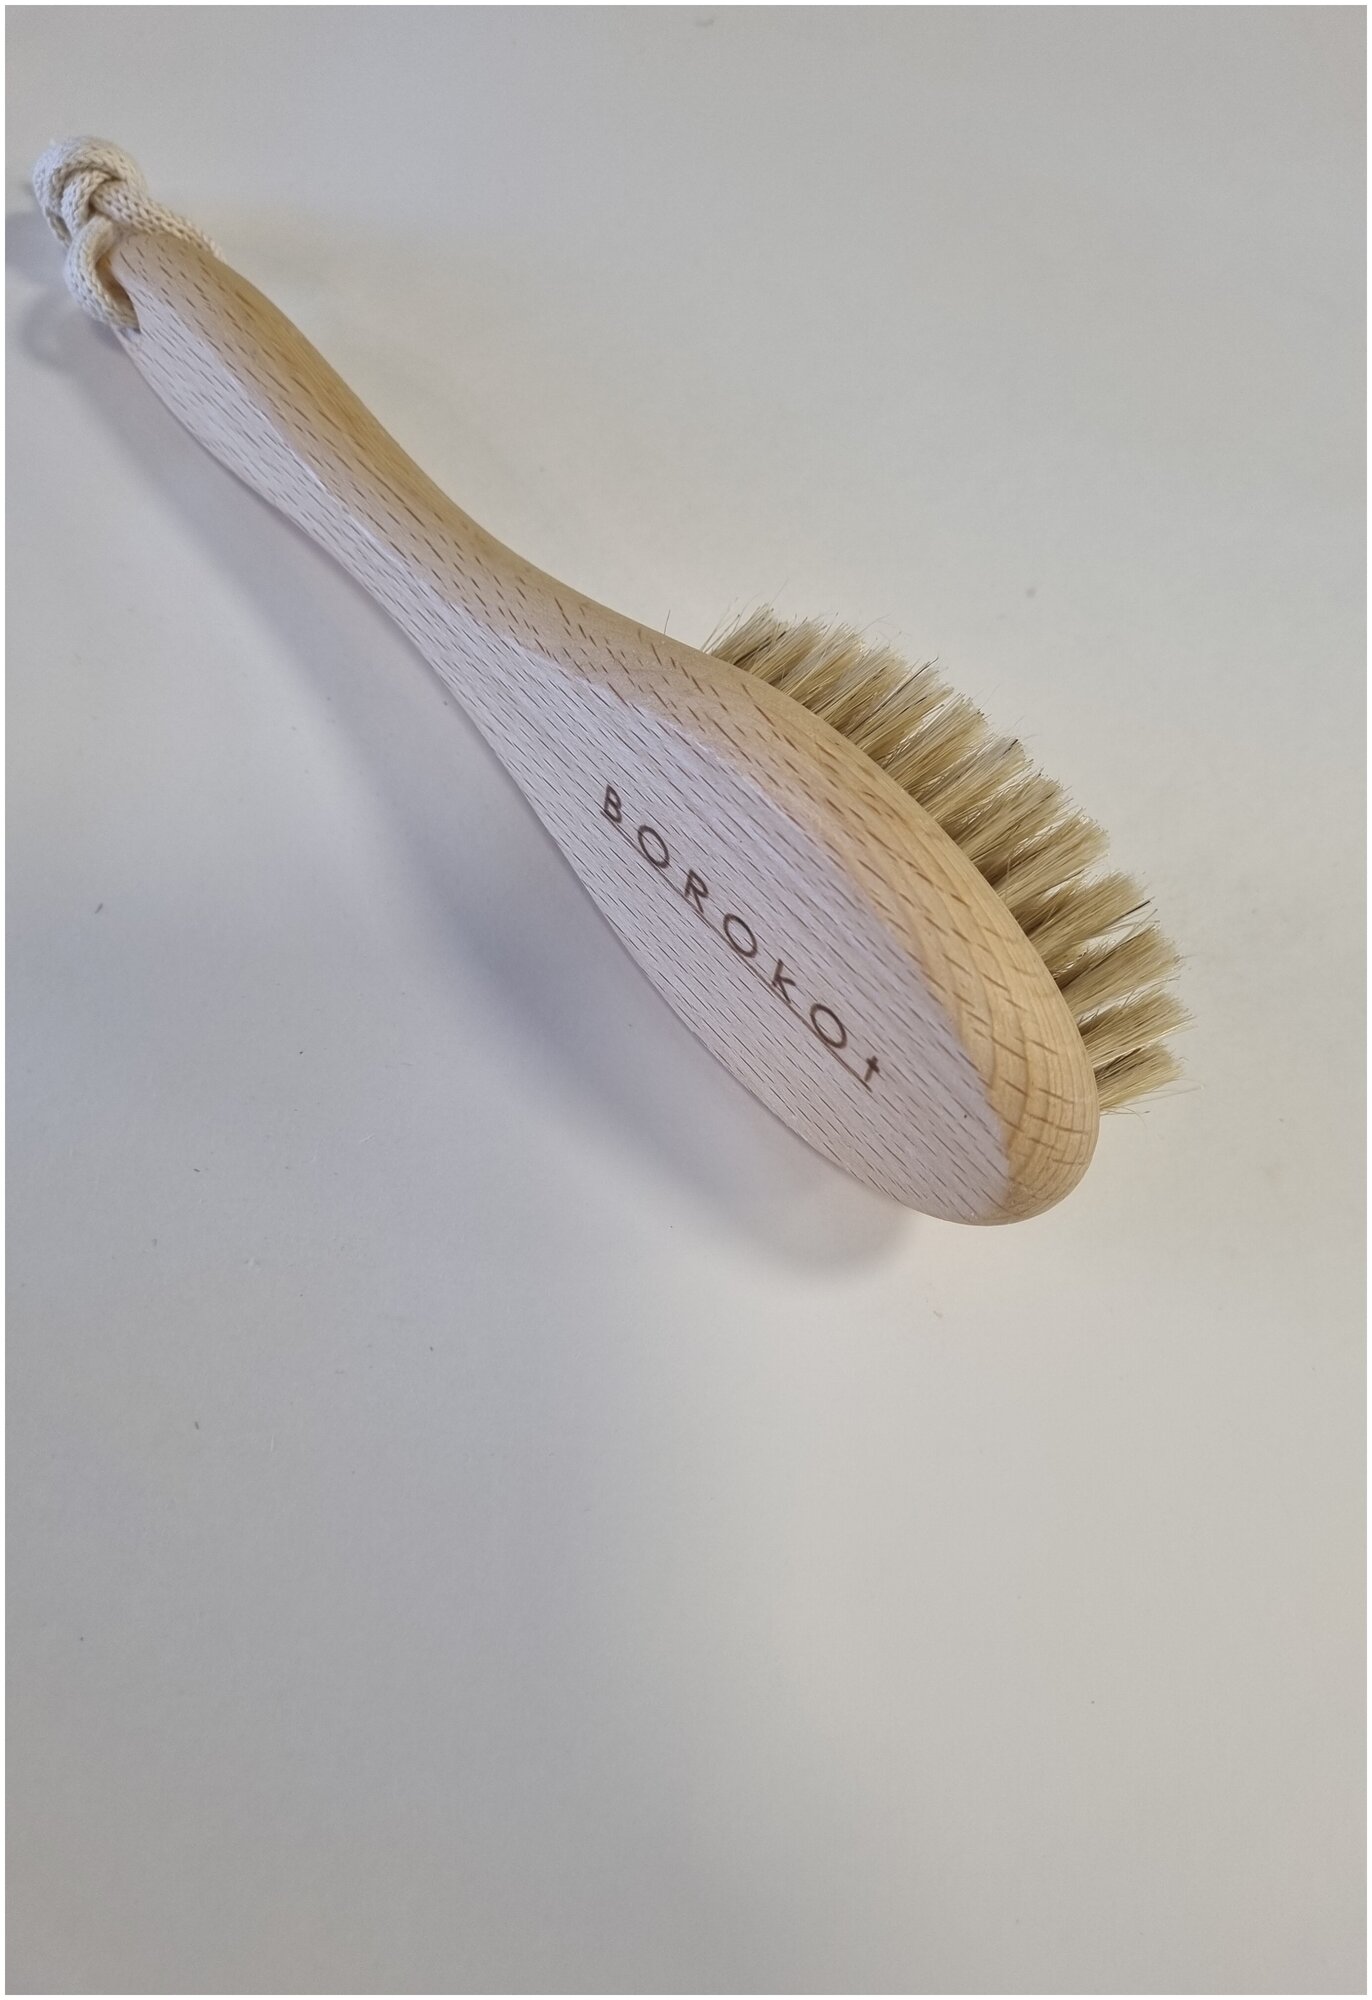 Антицеллюлитная массажная пилинг щетка с ручкой для сухого массажа c натуральной щетиной кактуса Тампико, высокая жесткость, длина 23 см